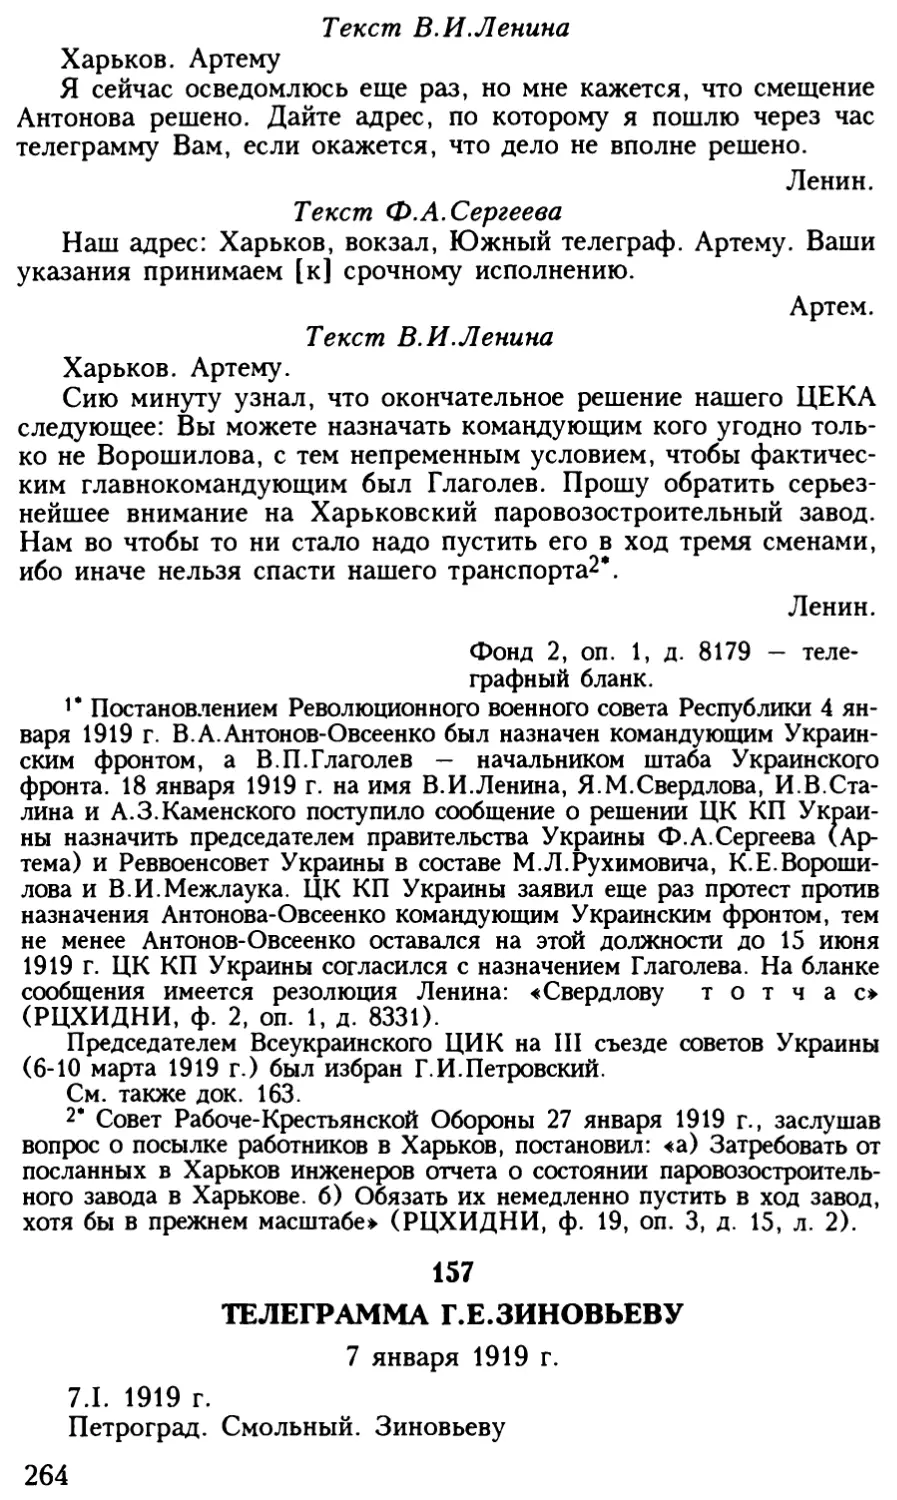 157. Телеграмма Г.Е.Зиновьеву. 7 января 1919 г